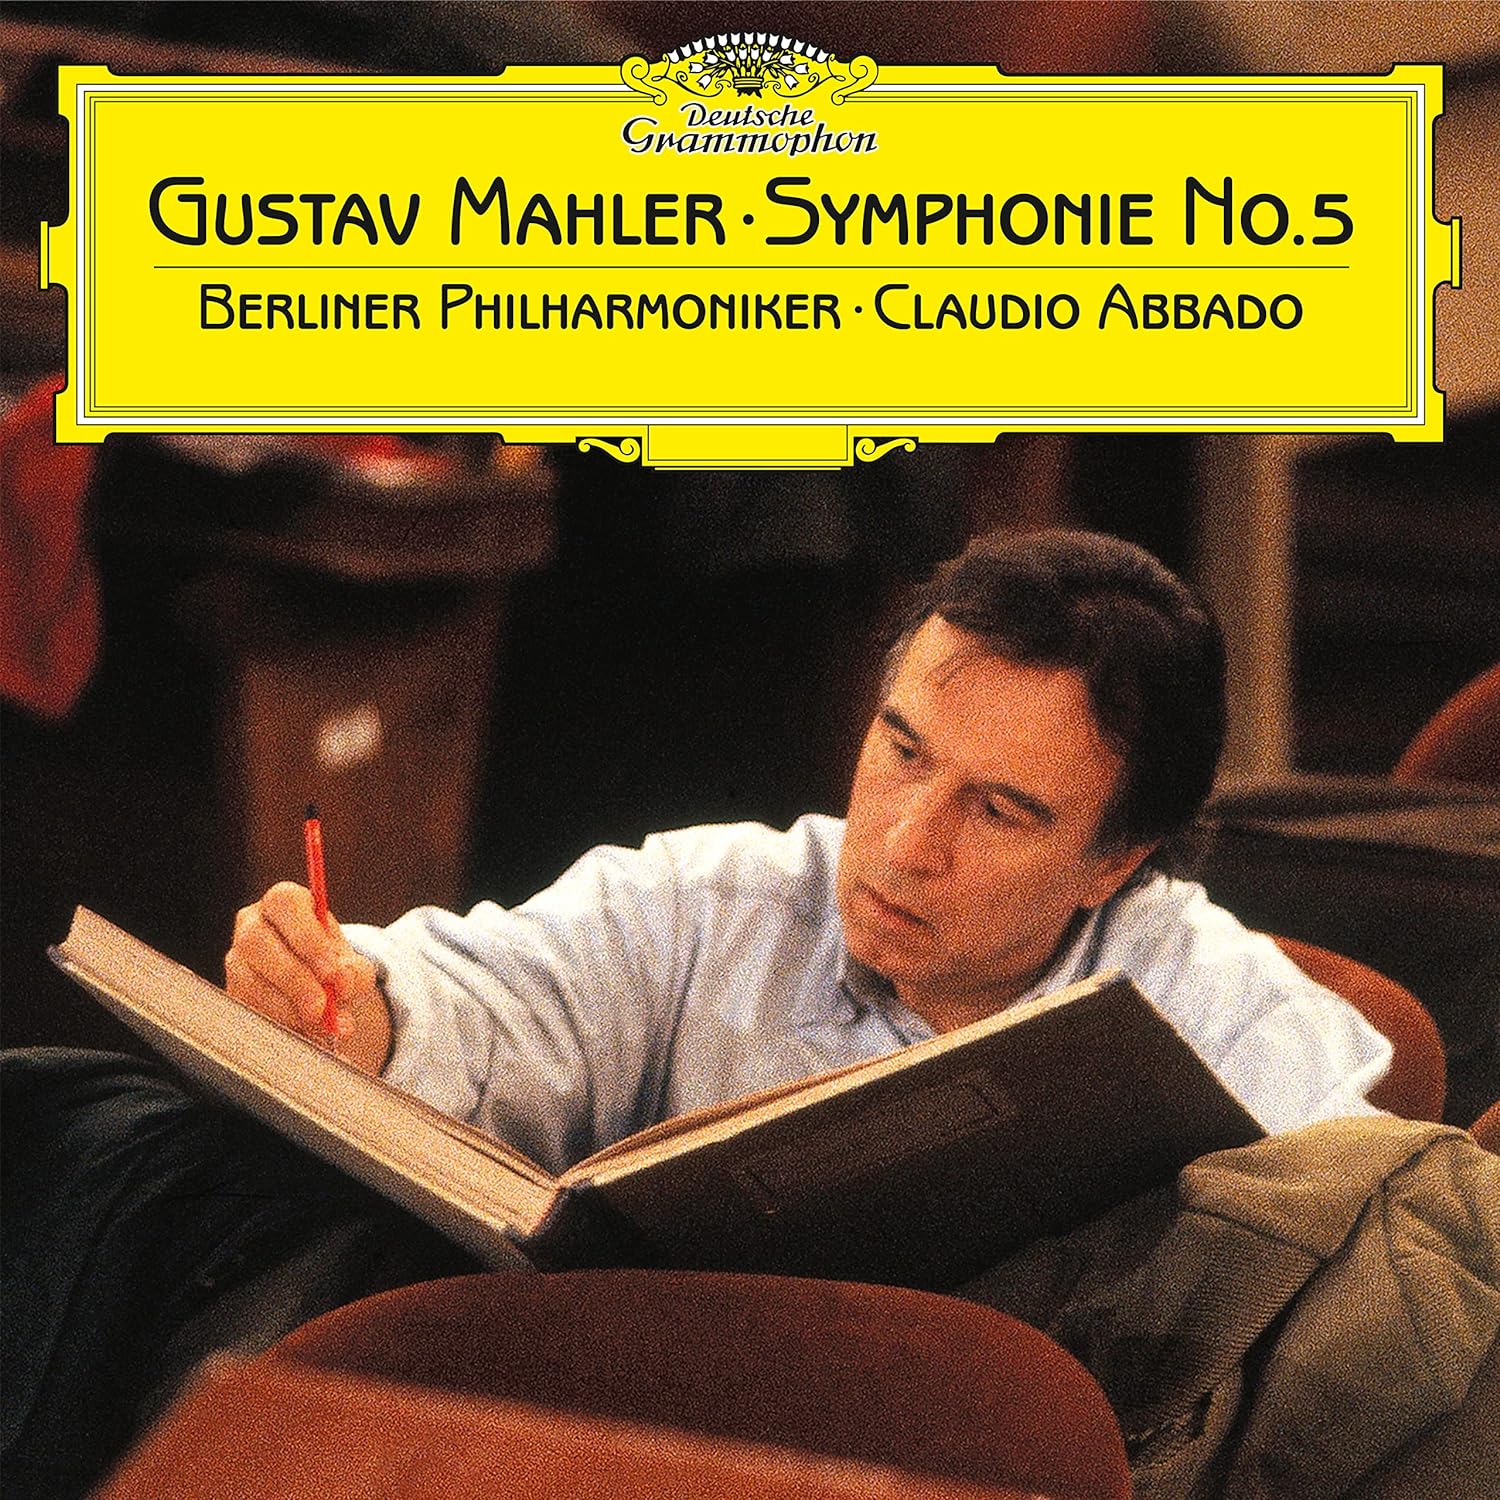 Berliner Philharmoniker/claudio Abbado - Mahler: Symphonie No. 5